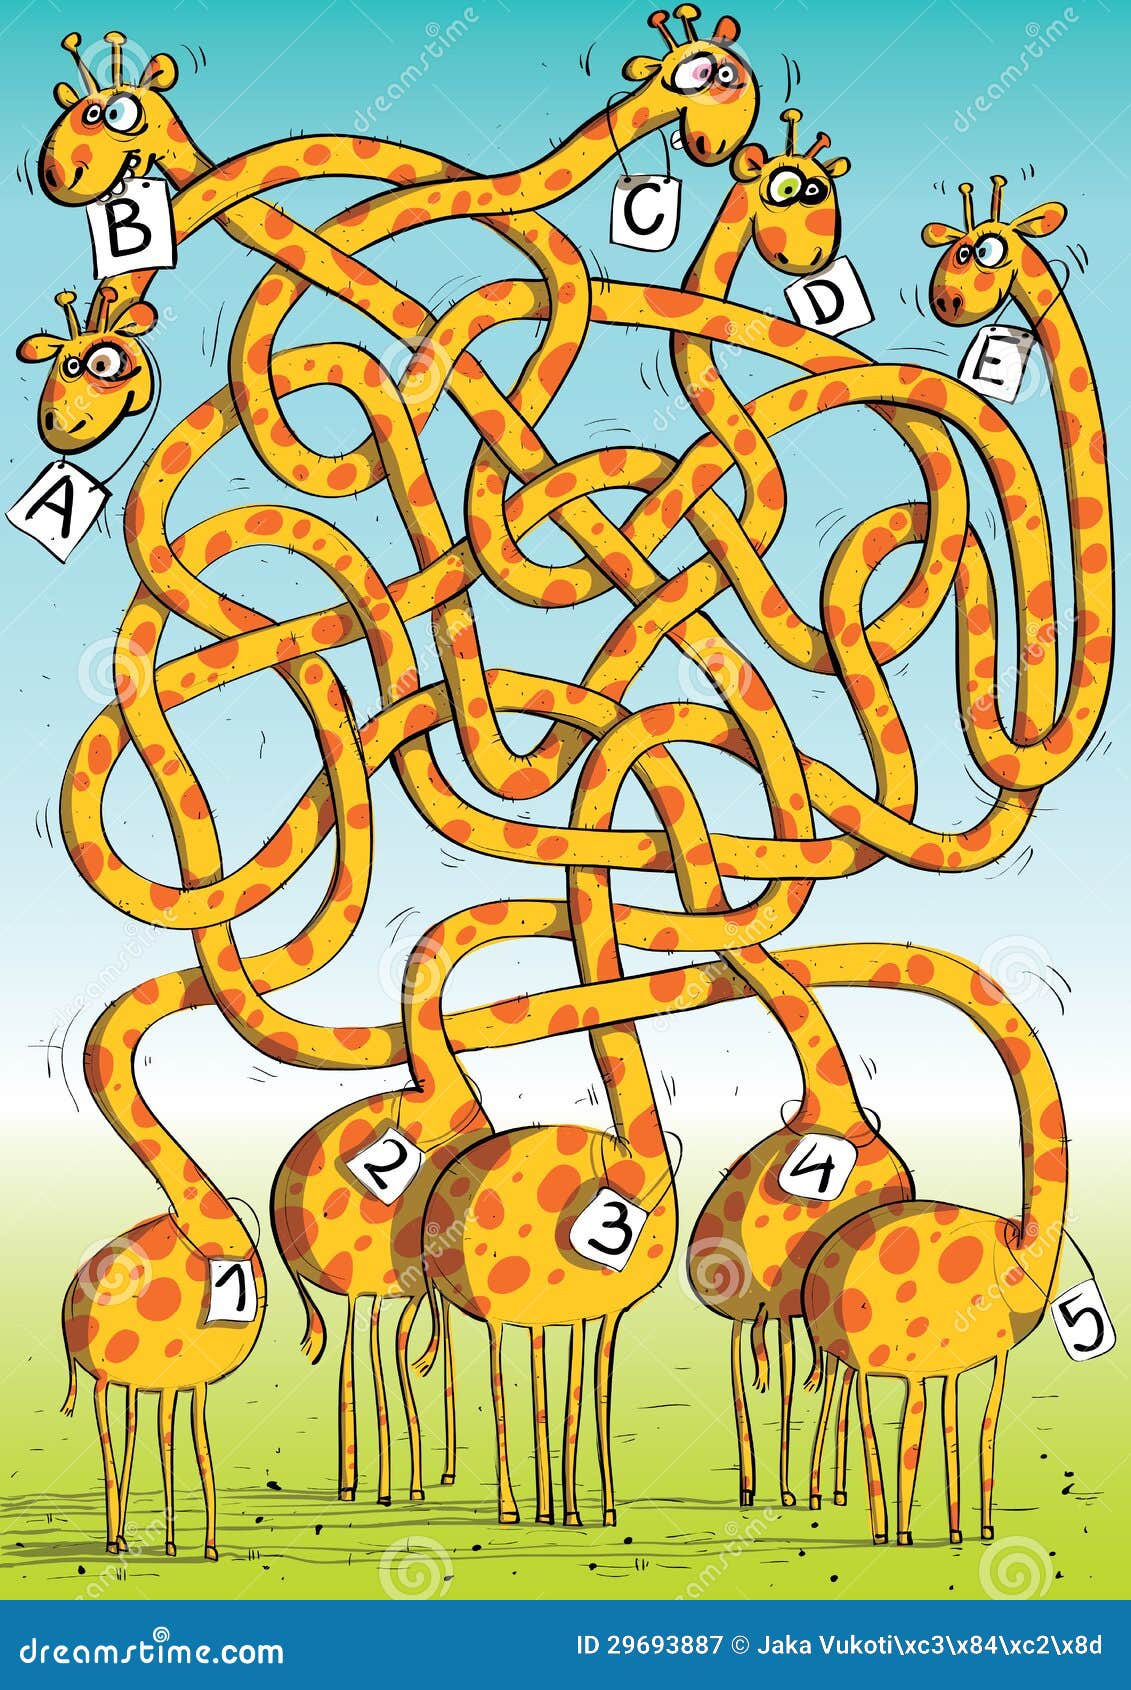 five giraffes maze game